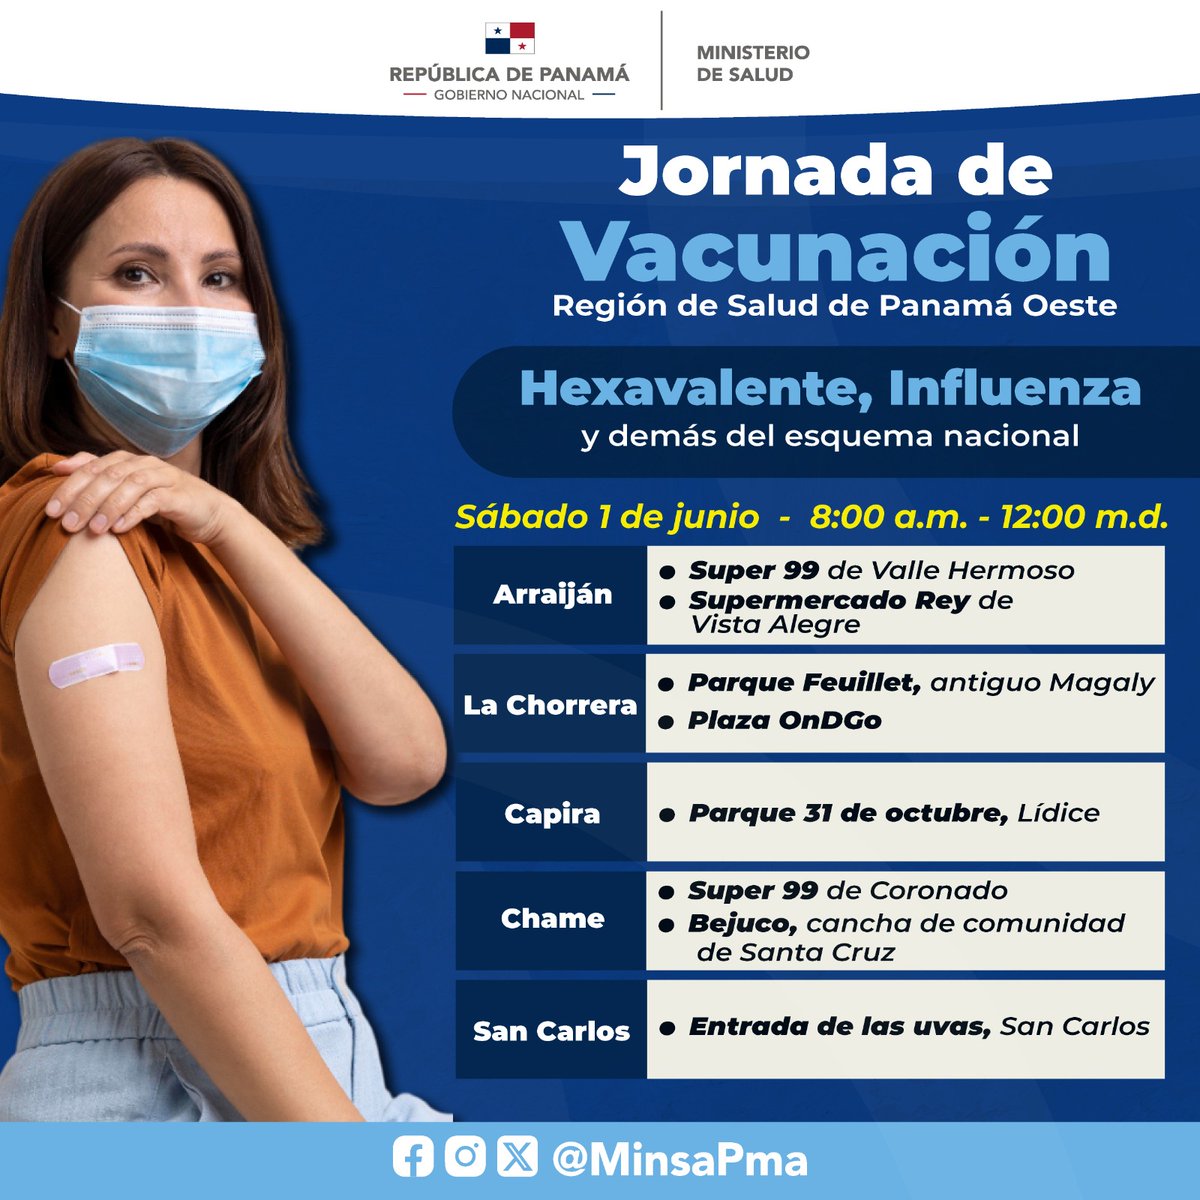 Te invitamos a participar de la Jornada de Vacunación en la Región de Salud de Panamá Oeste, este 1 de junio, de las 8:00 a.m. a 12:00 m.d., en donde ofreceremos la vacunas Hexevalente, Influenza y demás dosis del esquema nacional, totalmente gratis.